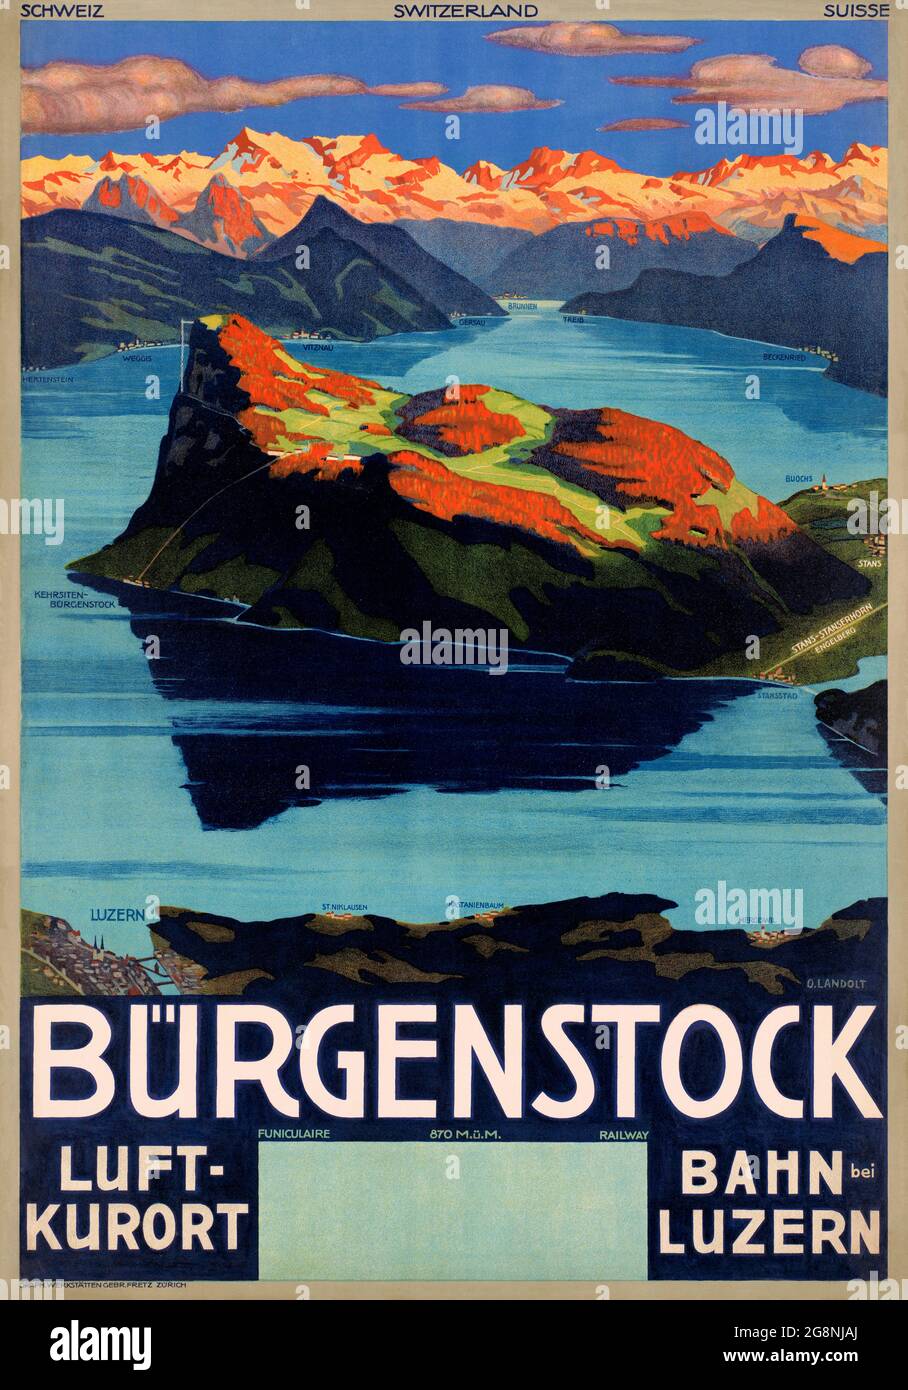 Bürgenstock. Luftkurort. Bahn Luzern by Otto Landolt (1889-1951). Restauriertes Vintage-Poster, das 1930 in der Schweiz veröffentlicht wurde. Stockfoto